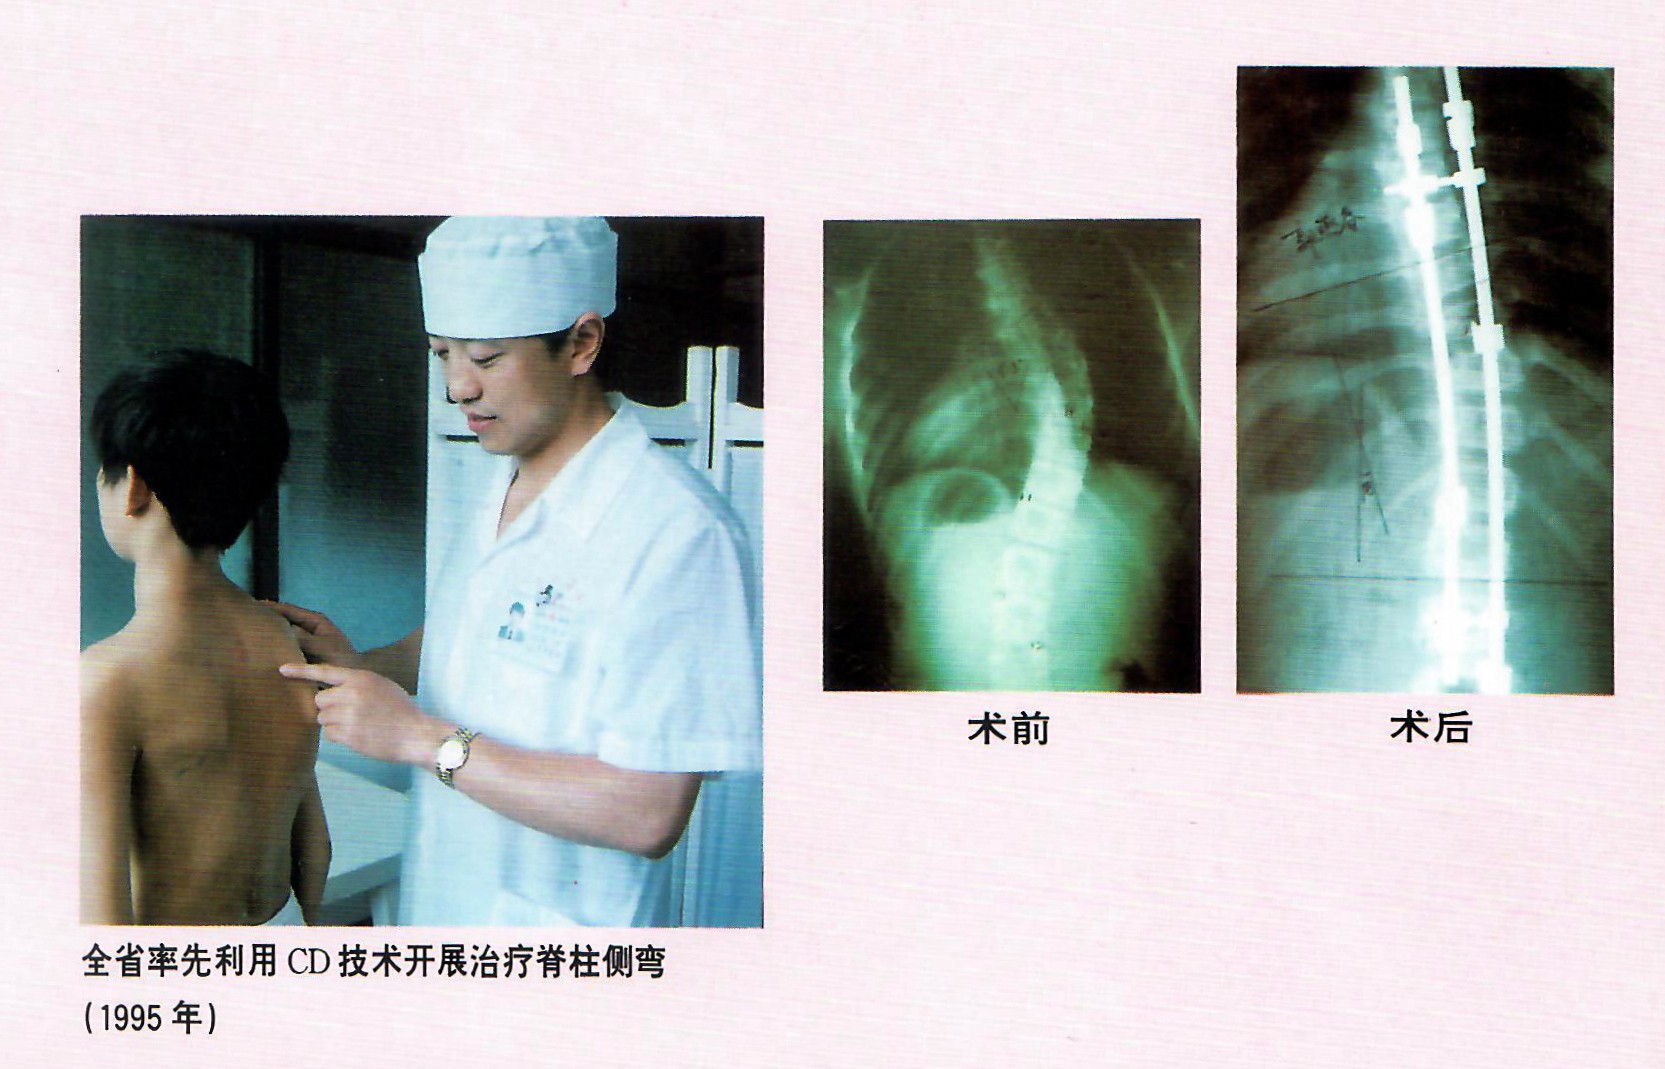 1995年，林海滨教授做了福建省第一例CD技术矫正脊椎侧弯手术.jpg